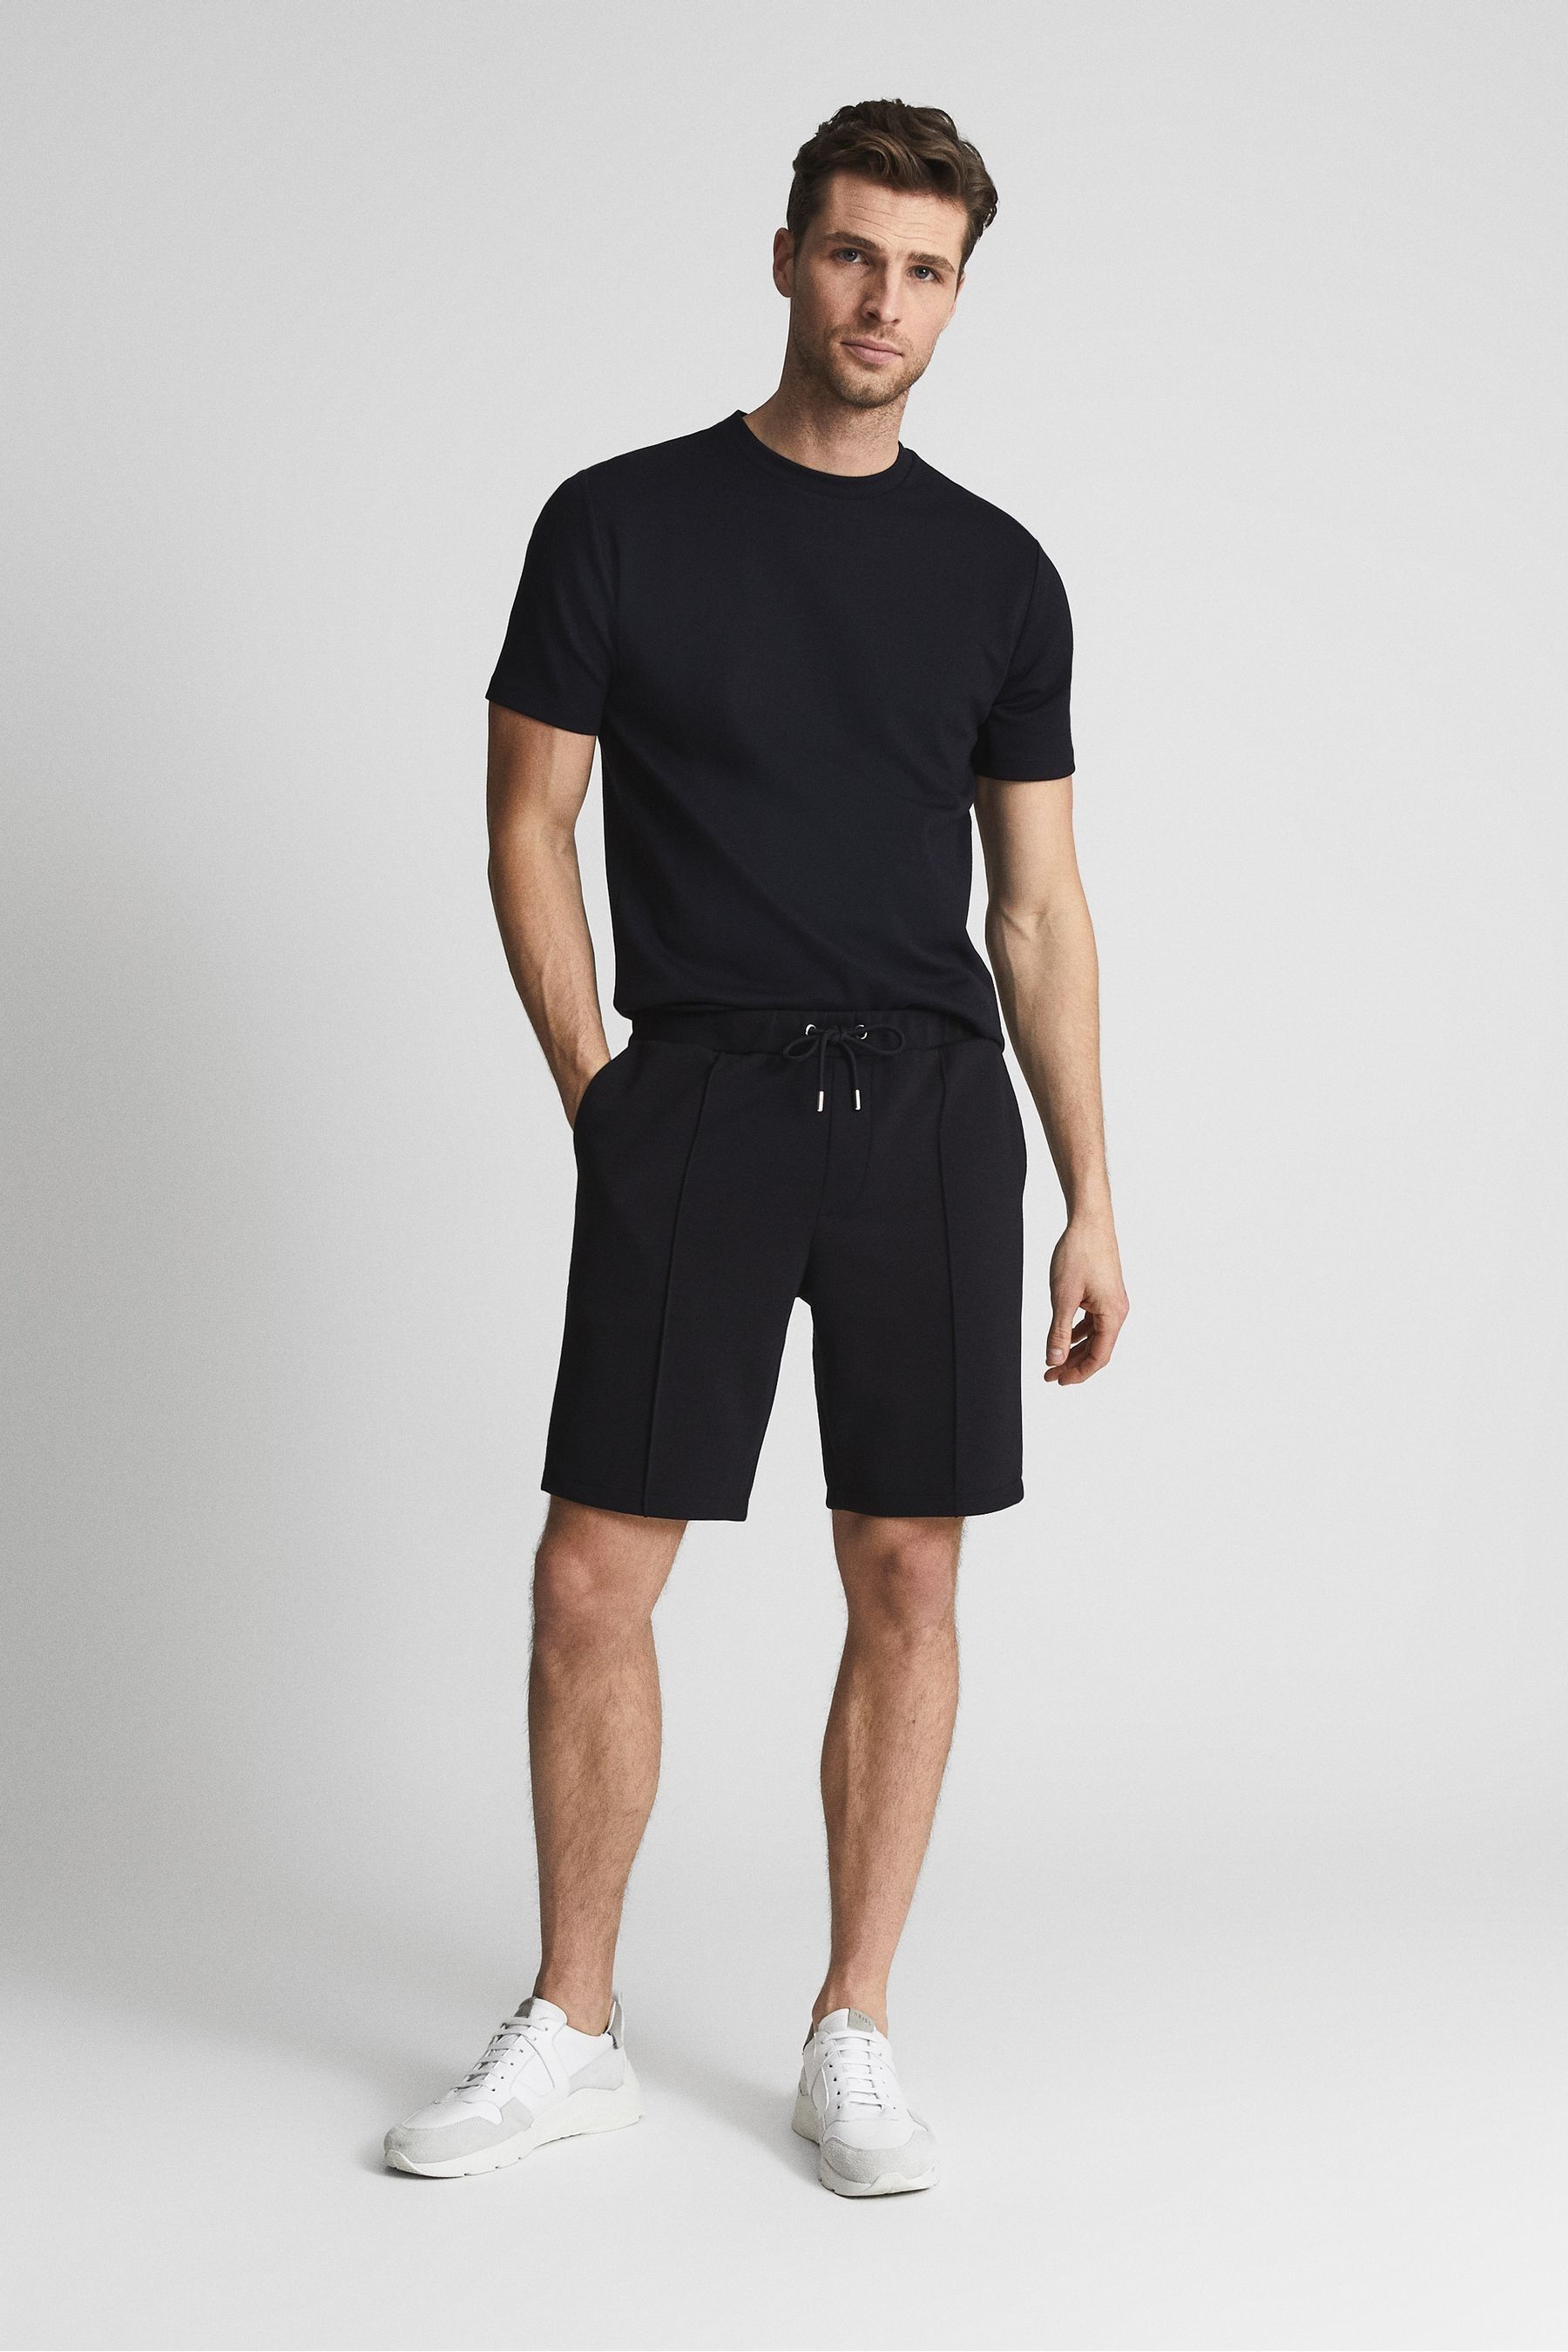 Dale - Navy Jersey Shorts